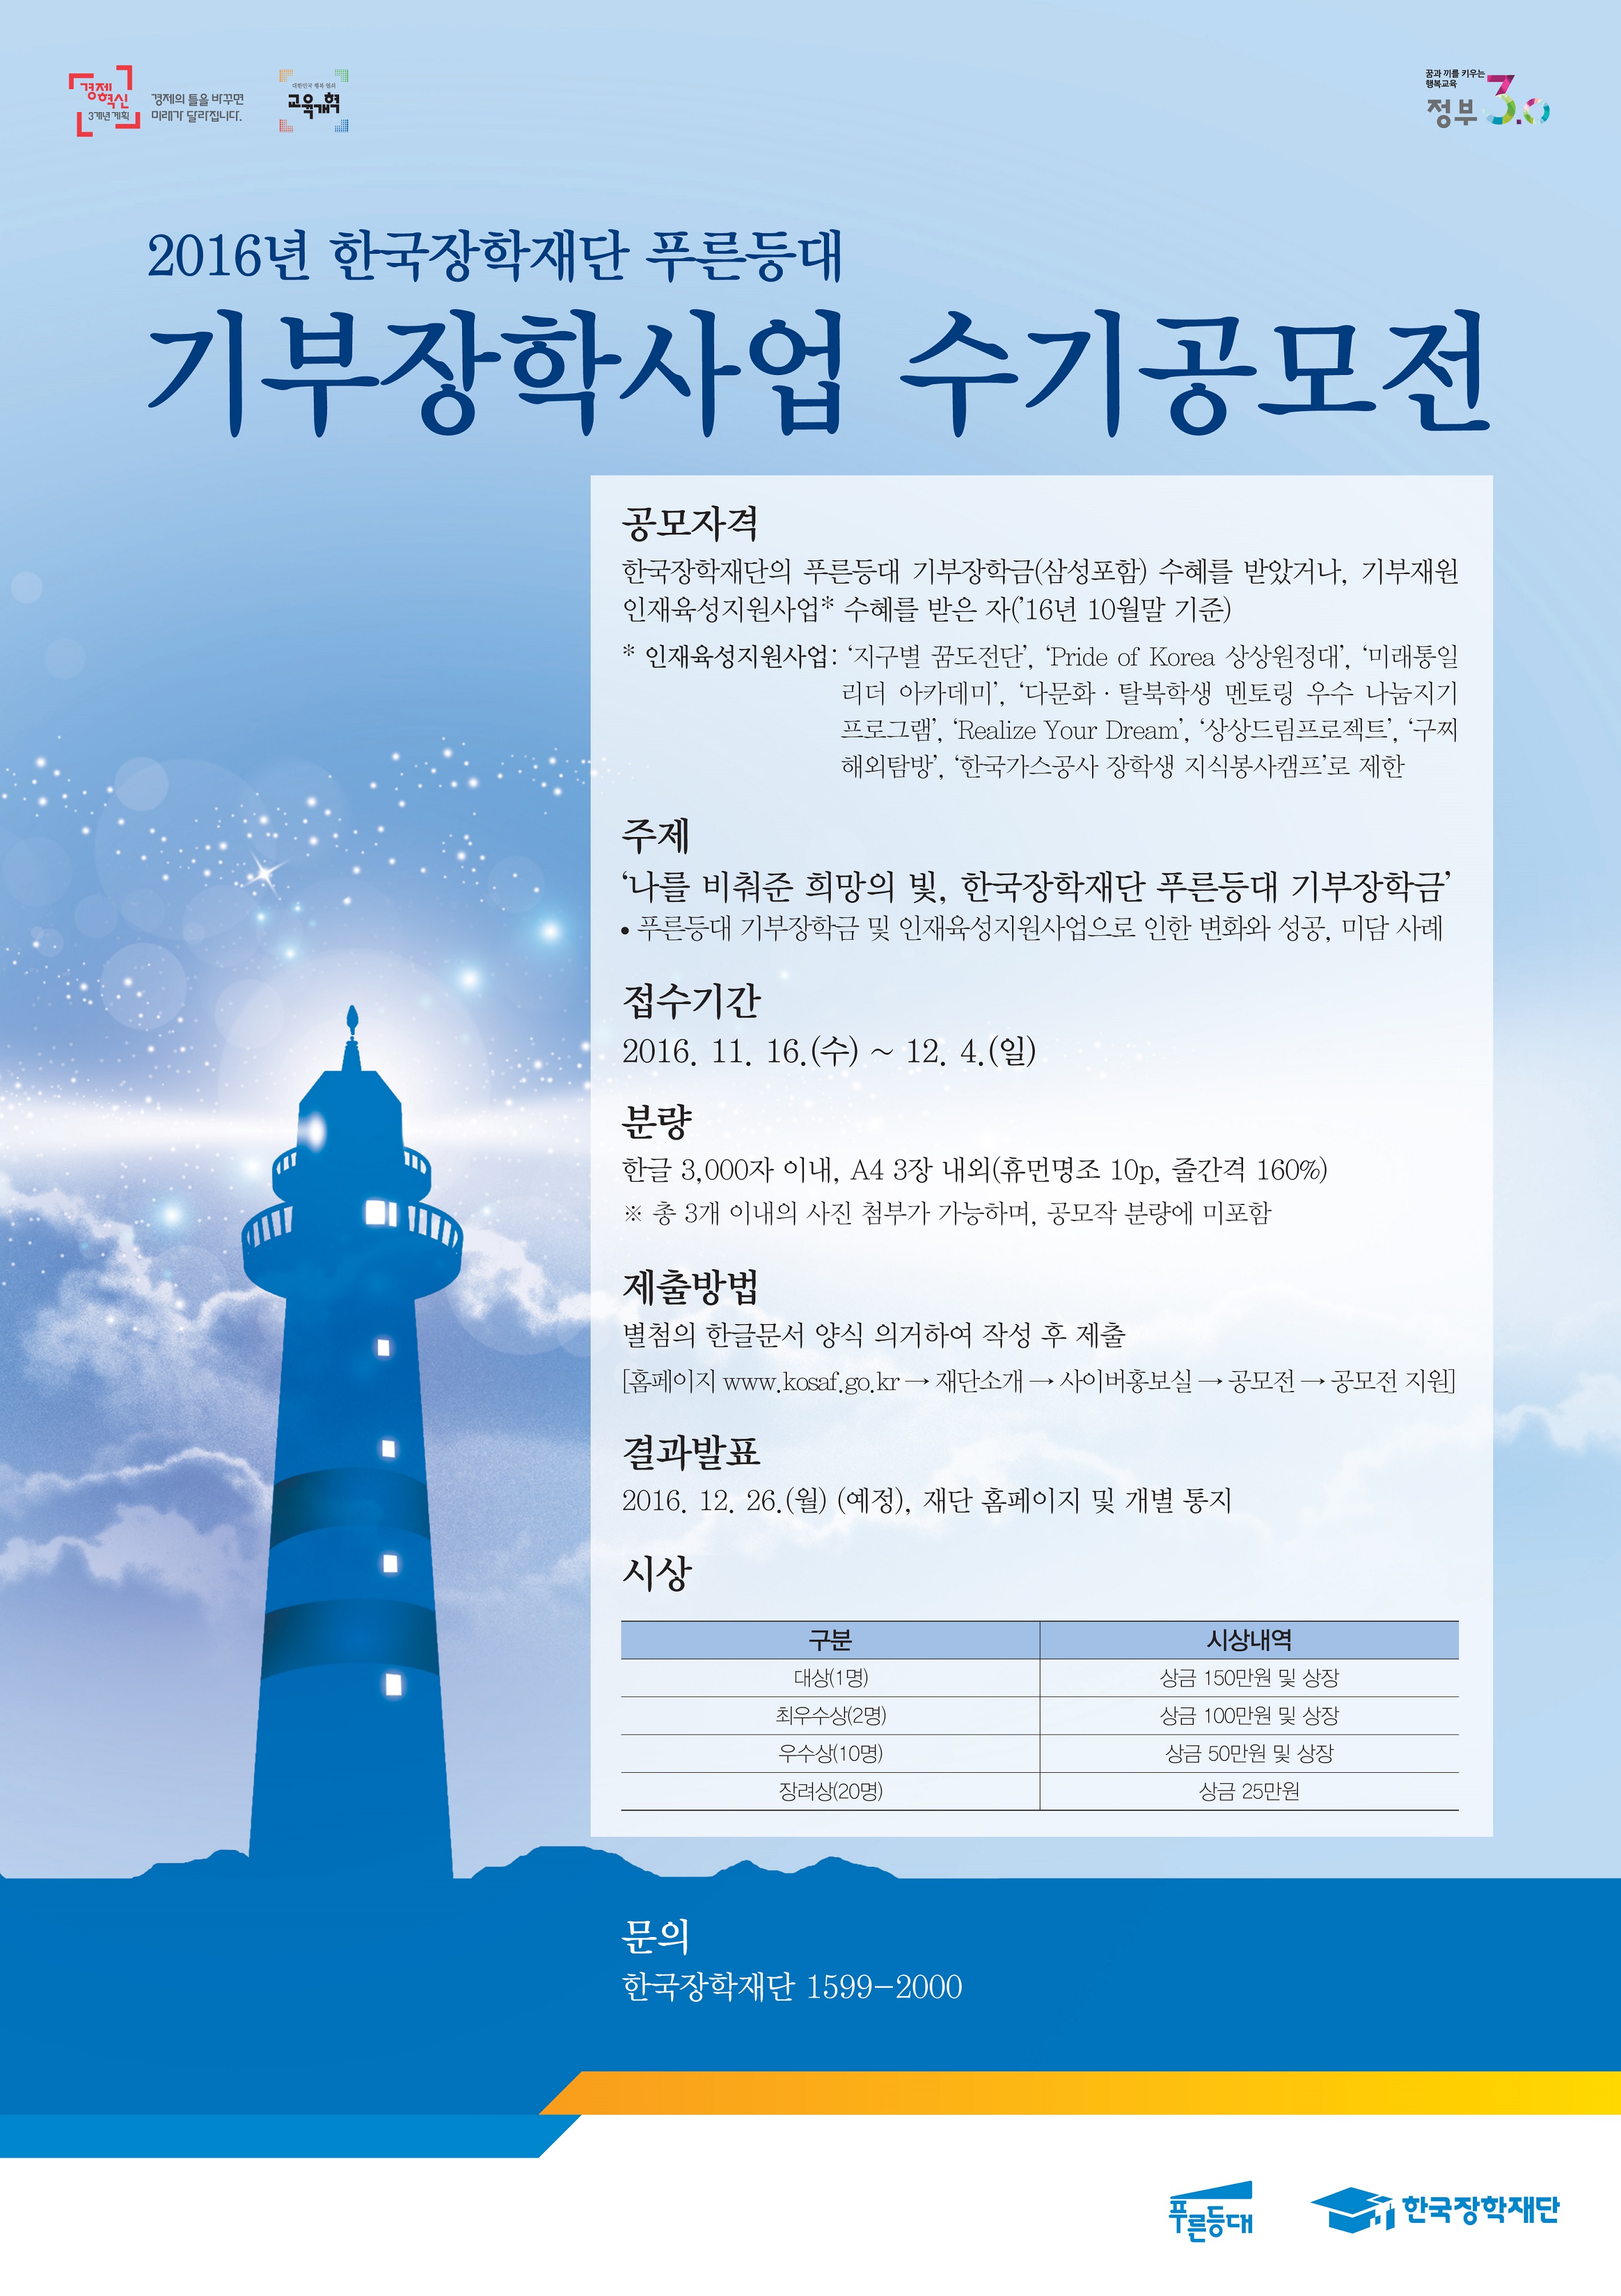 2016년 한국장학재단 푸른등대 기부장학사업 수기공모전 개최 안내